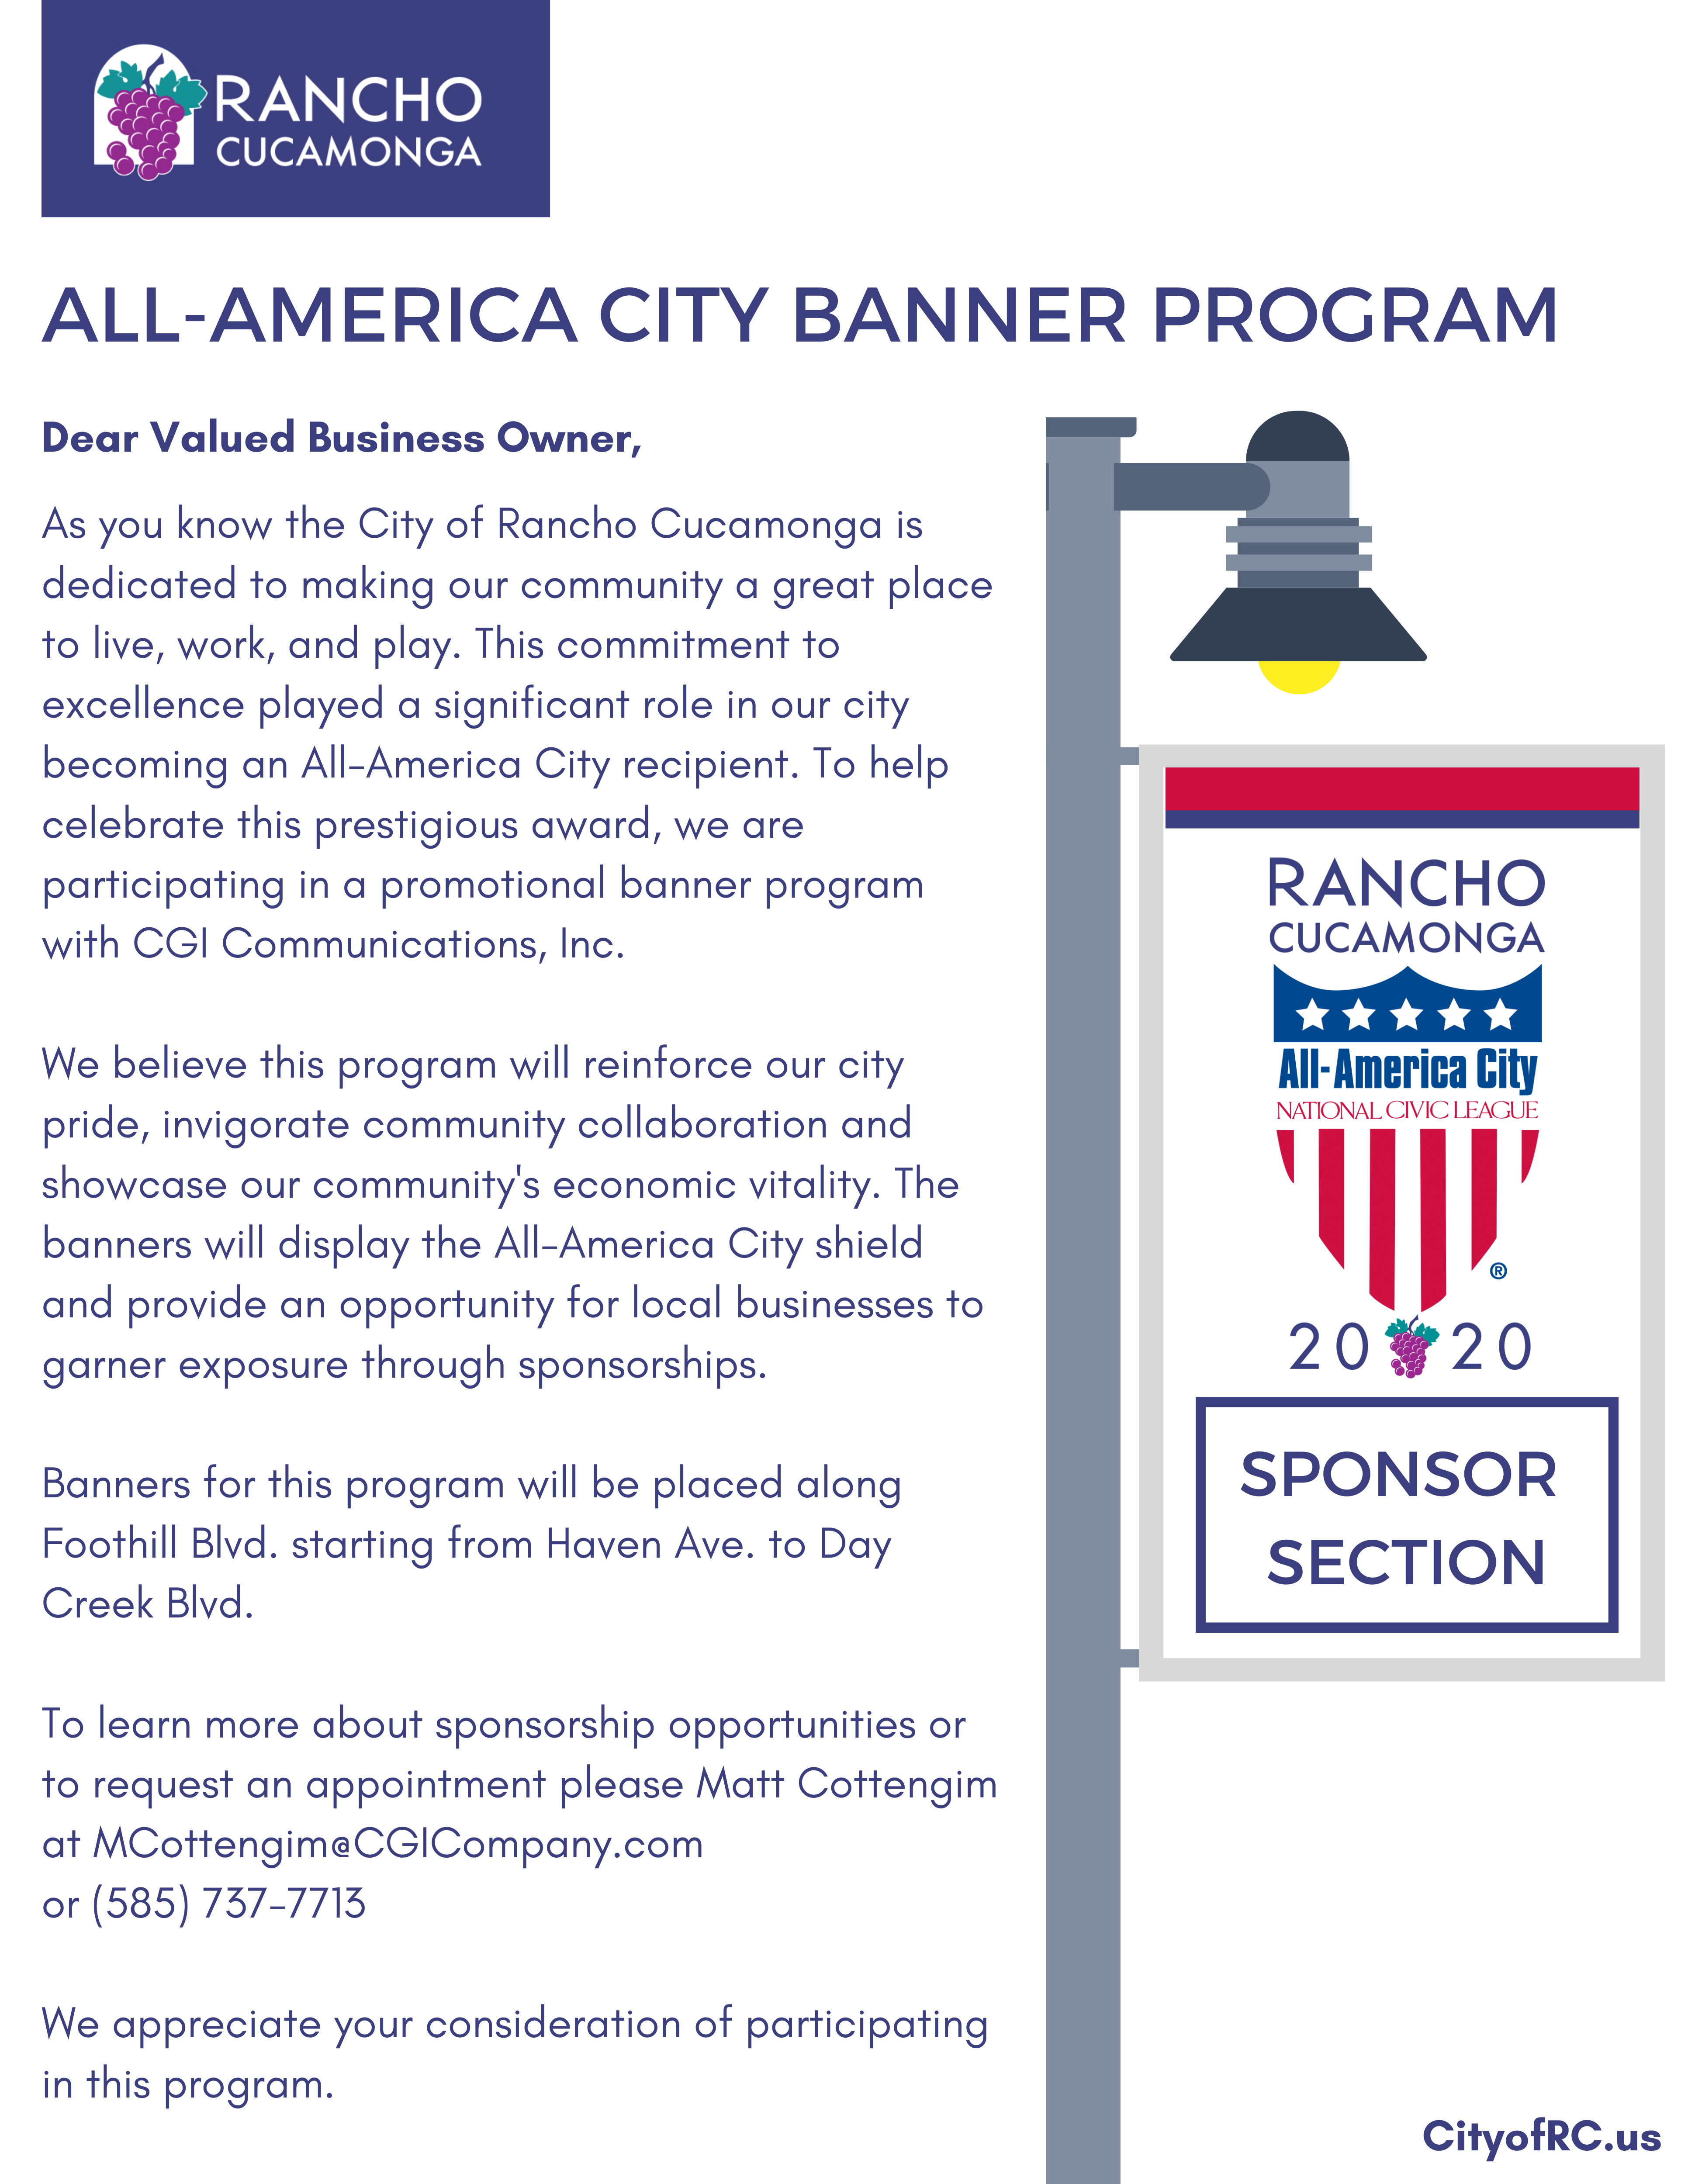 All-America City Banner Program